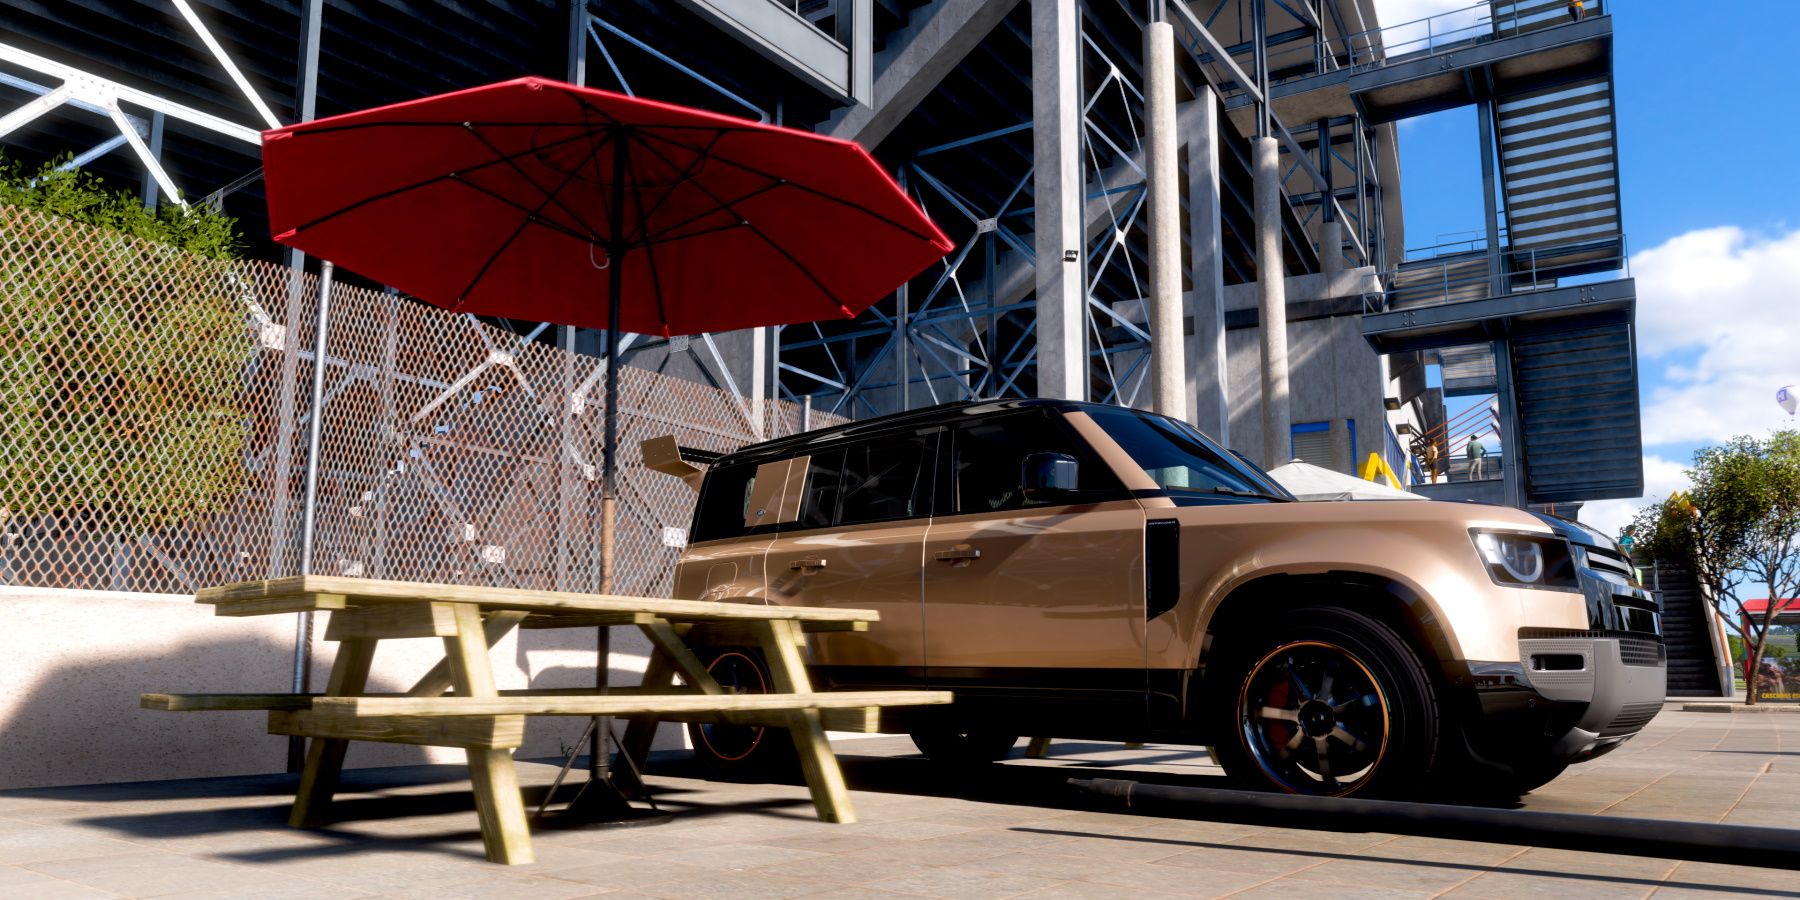 Forza Horizon 5 Picnoc Table and Defender Land Rover at El Stadio Horizon